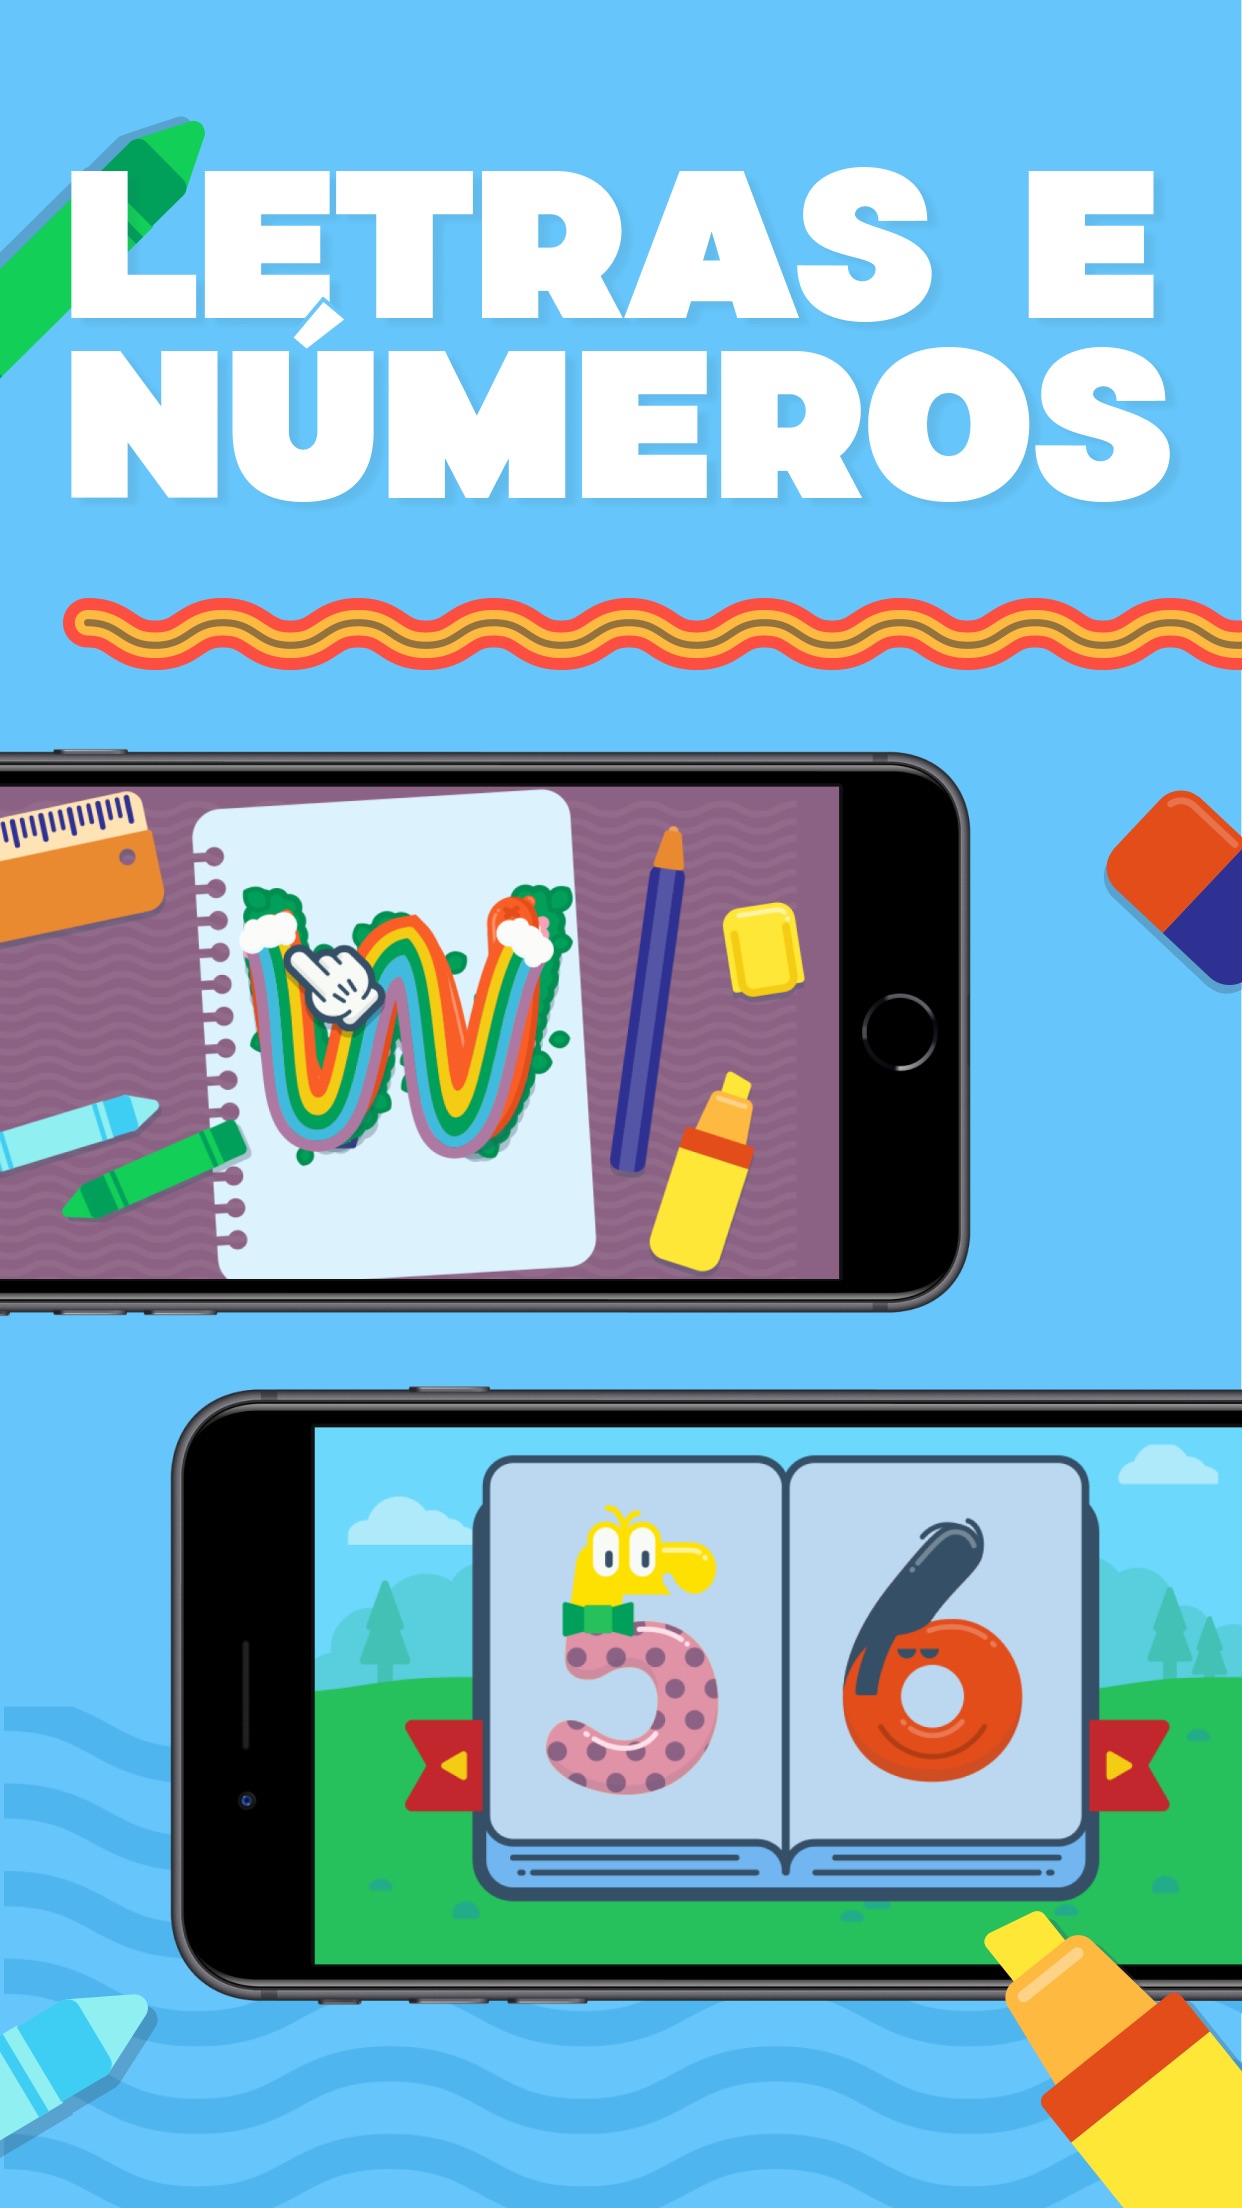 Screenshot do app Papumba: Jogos Crianças 2-7